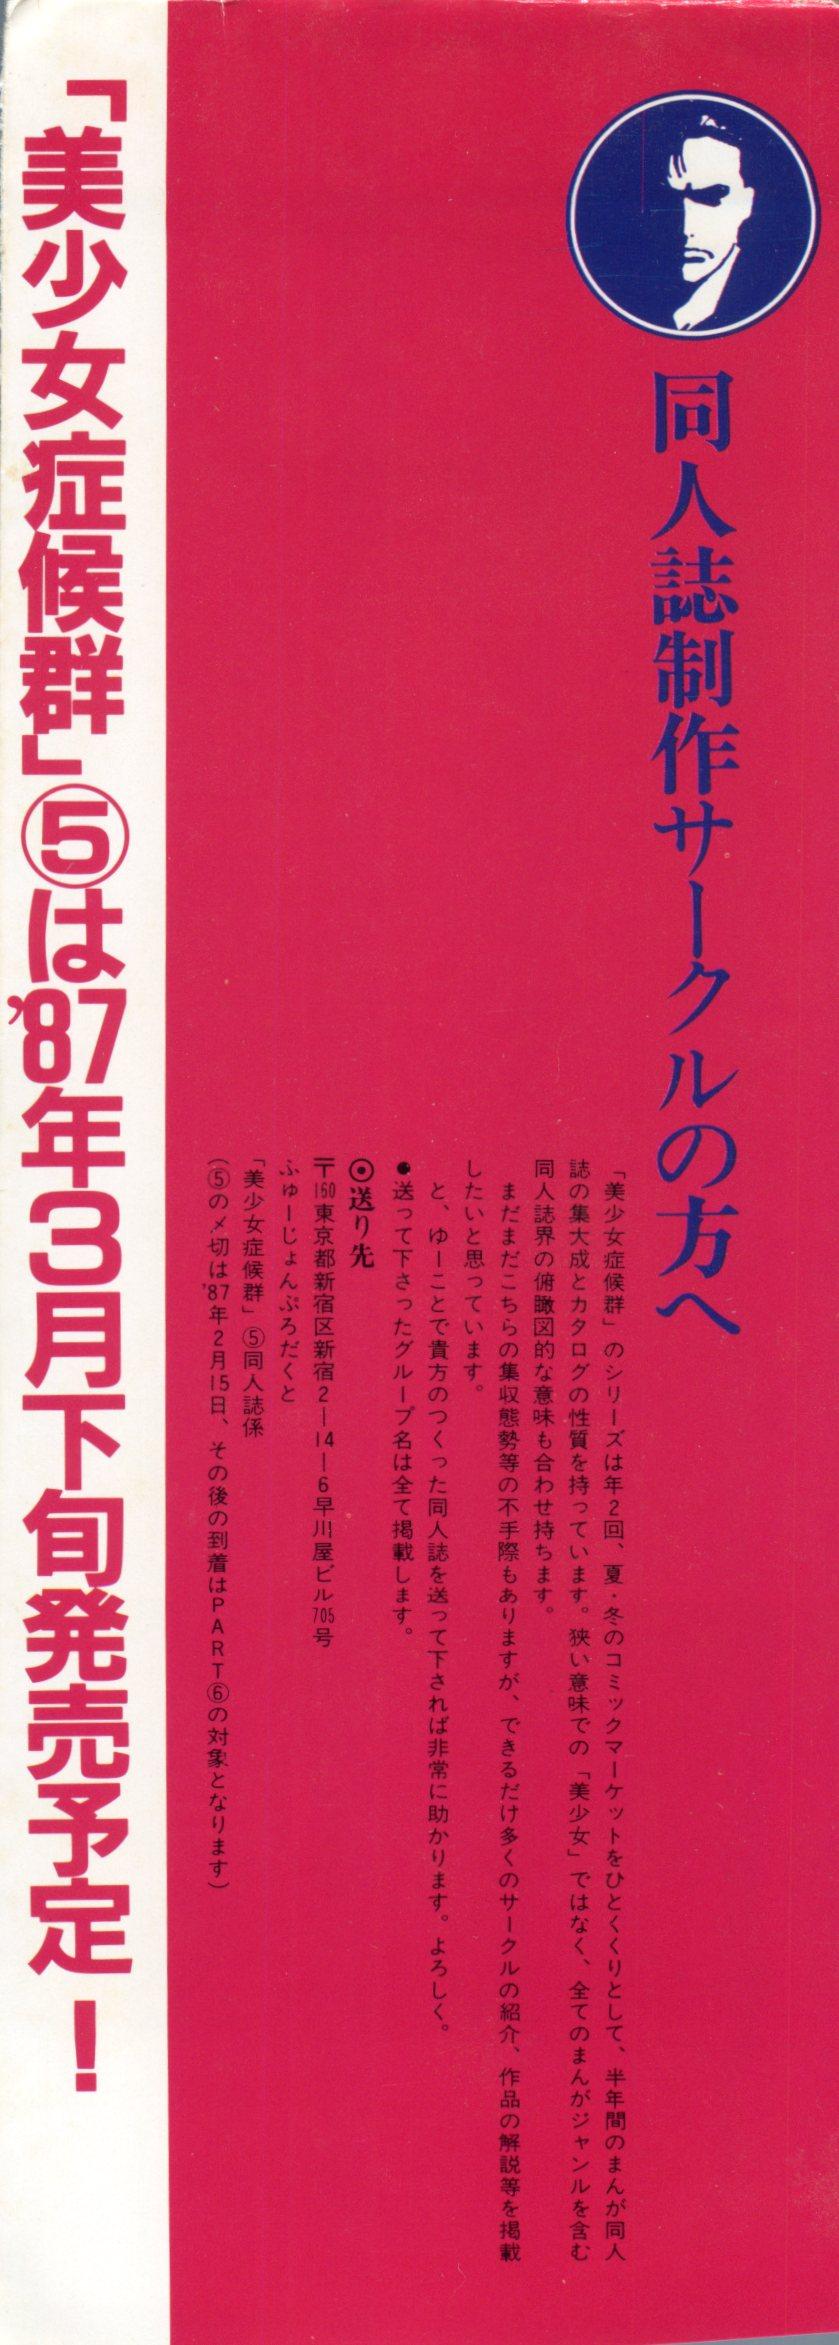 Ano Bishoujo Shoukougun Lolita Syndrome 4 - Urusei yatsura Dirty pair Closeup - Page 3